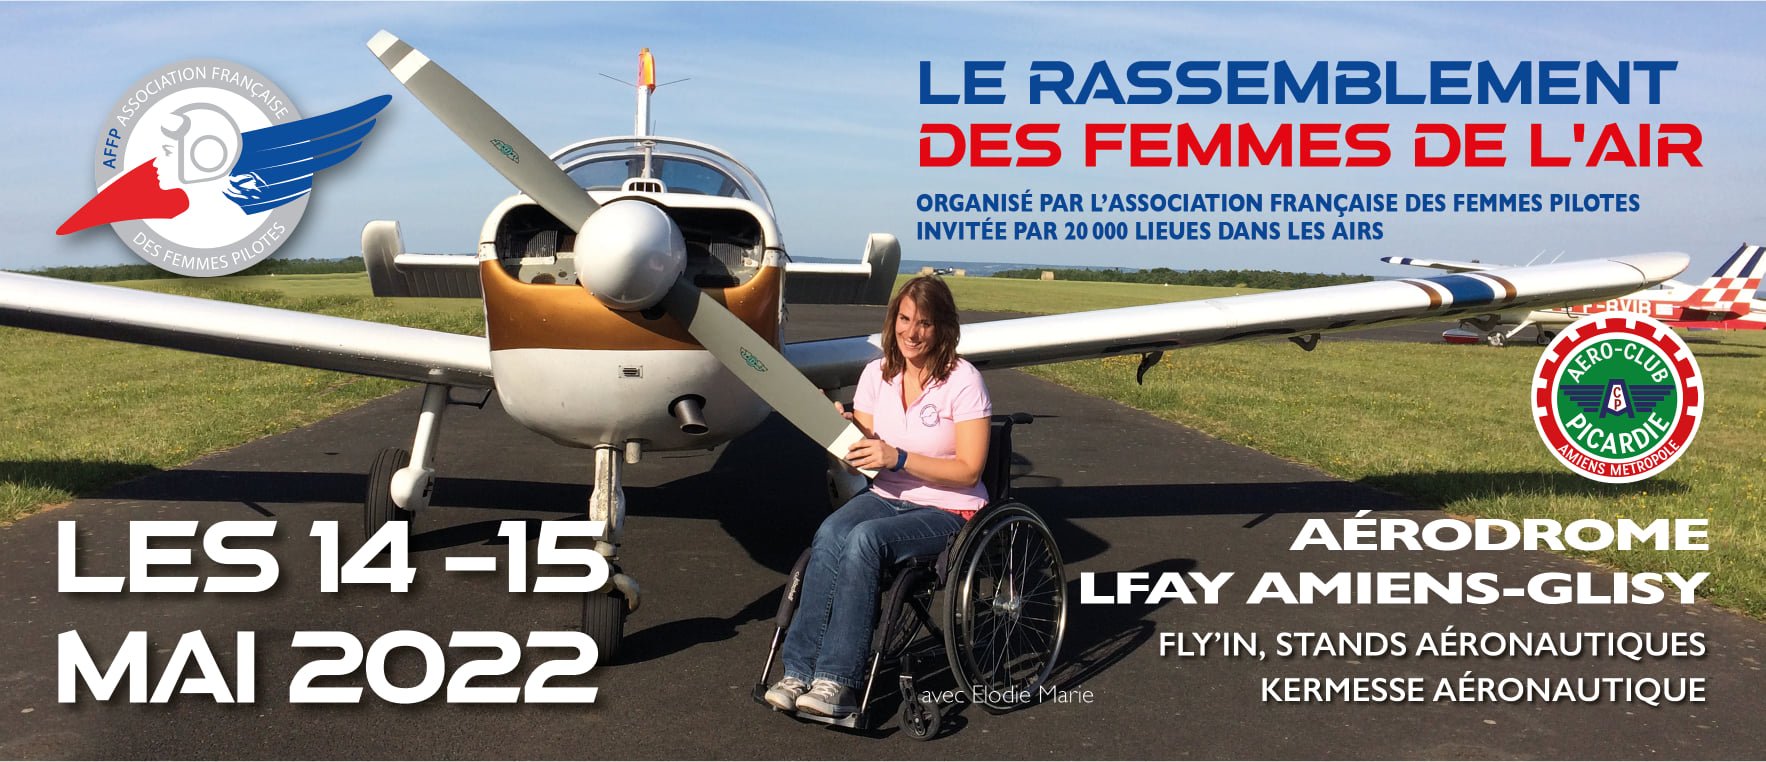 [AFFP] 12ème Rassemblement des Femmes de l'Air